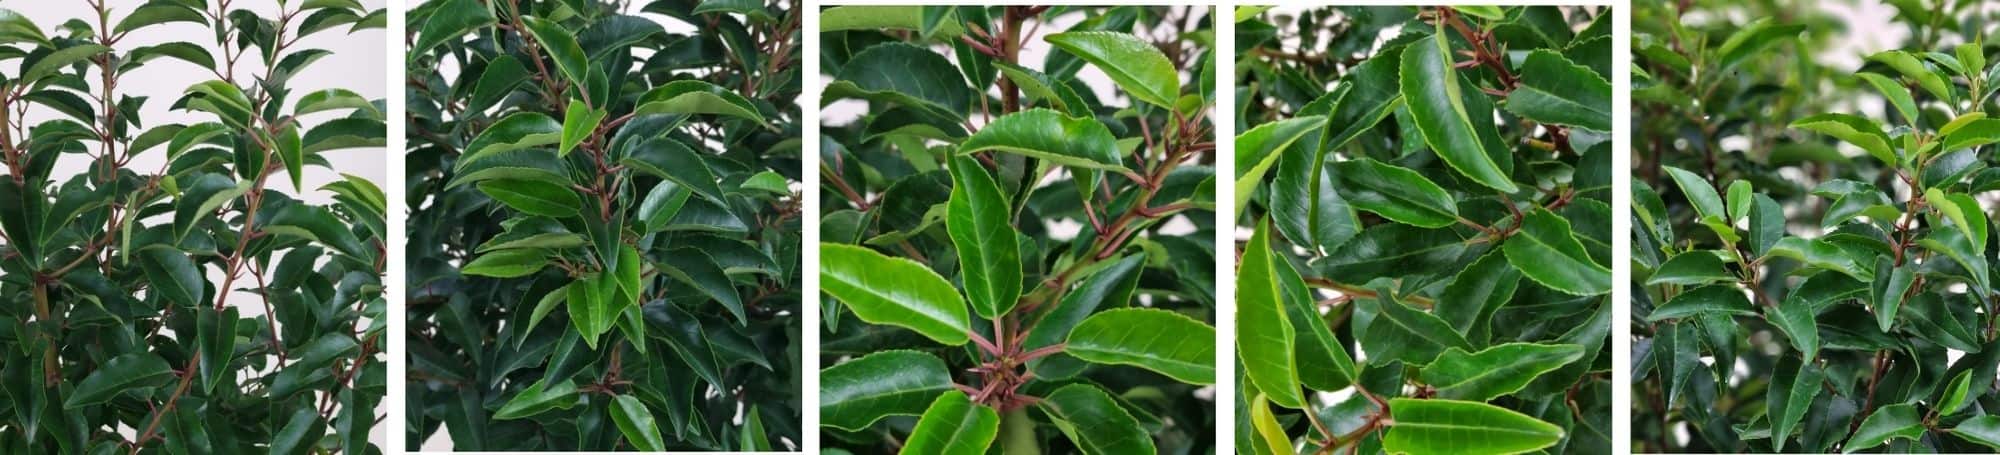 Prunus-lusitanica-Angustifolia-Eigenschaften-Textbild2-min